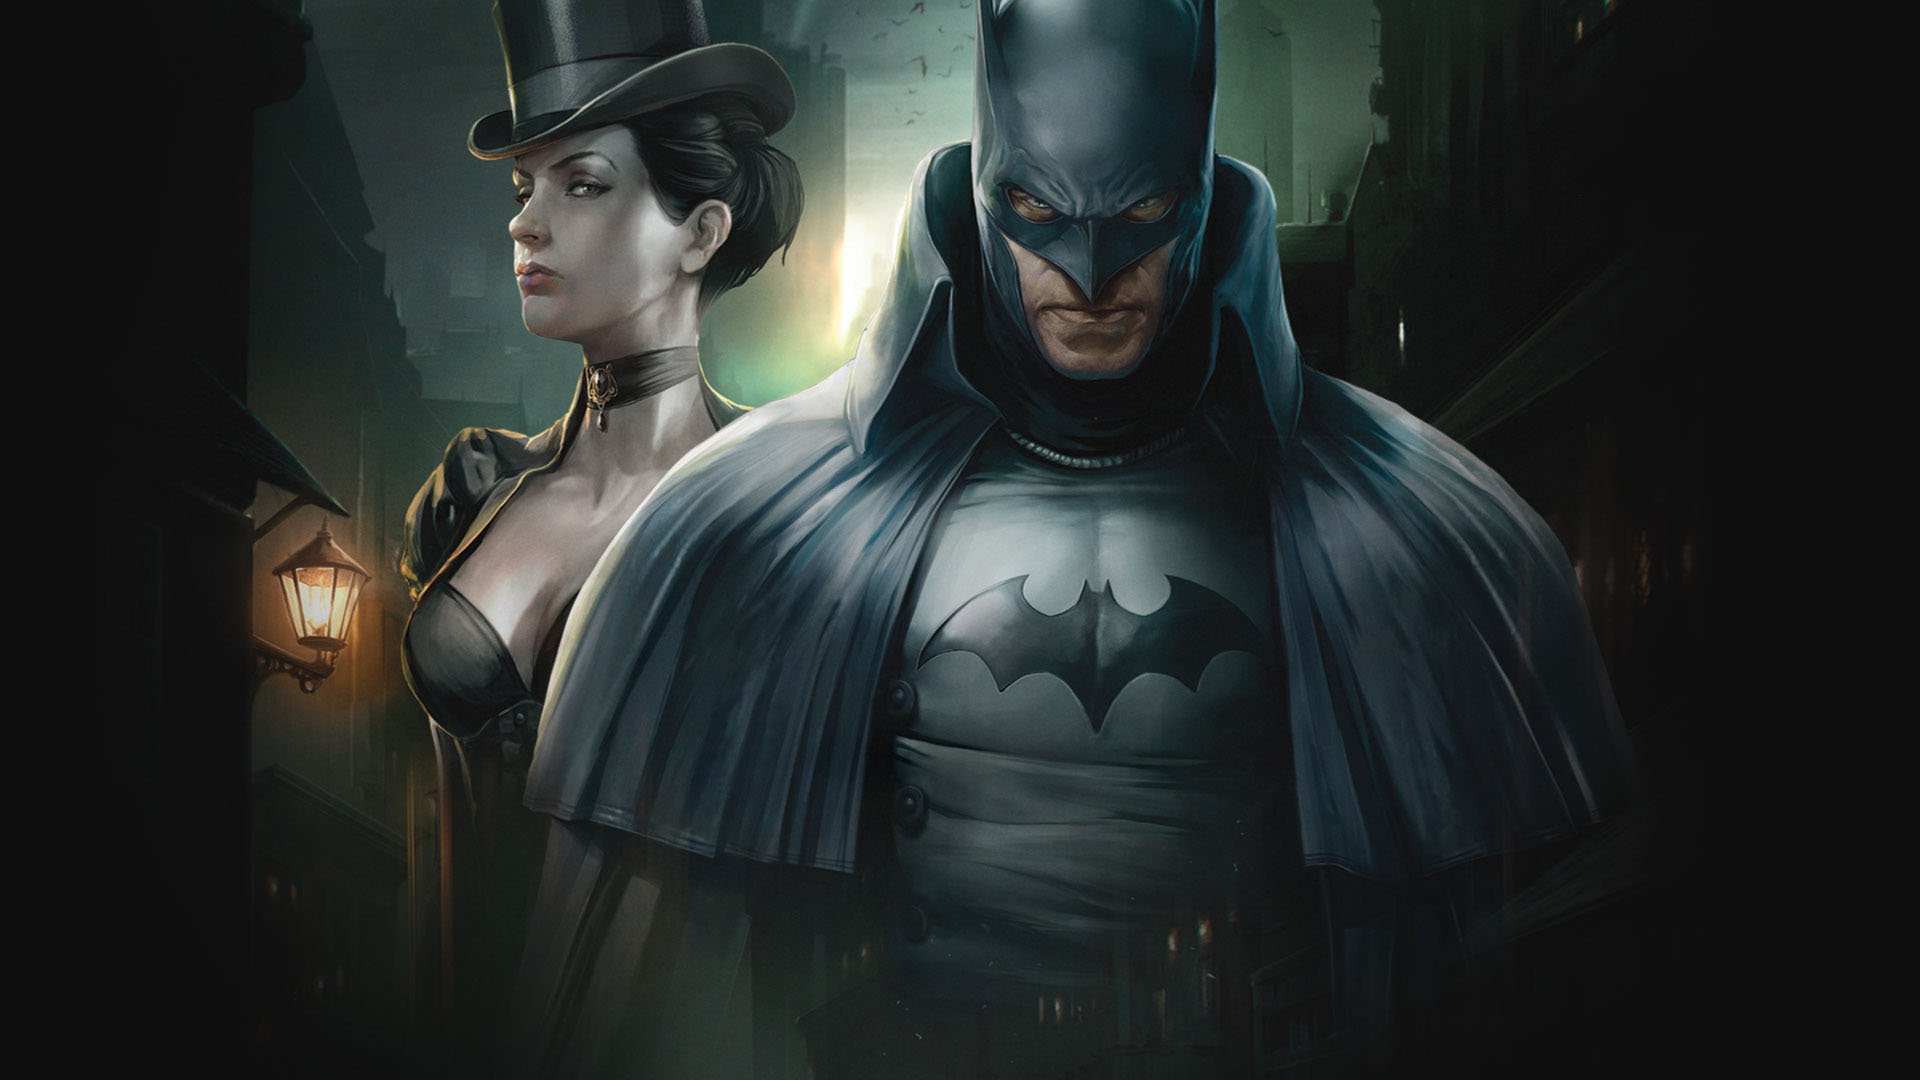 ბეტმენი: გოთემი გაზის სინათლით / Batman: Gotham by Gaslight (Betmeni: Gotemi Gazis Sinatlit Qartulad) ქართულად